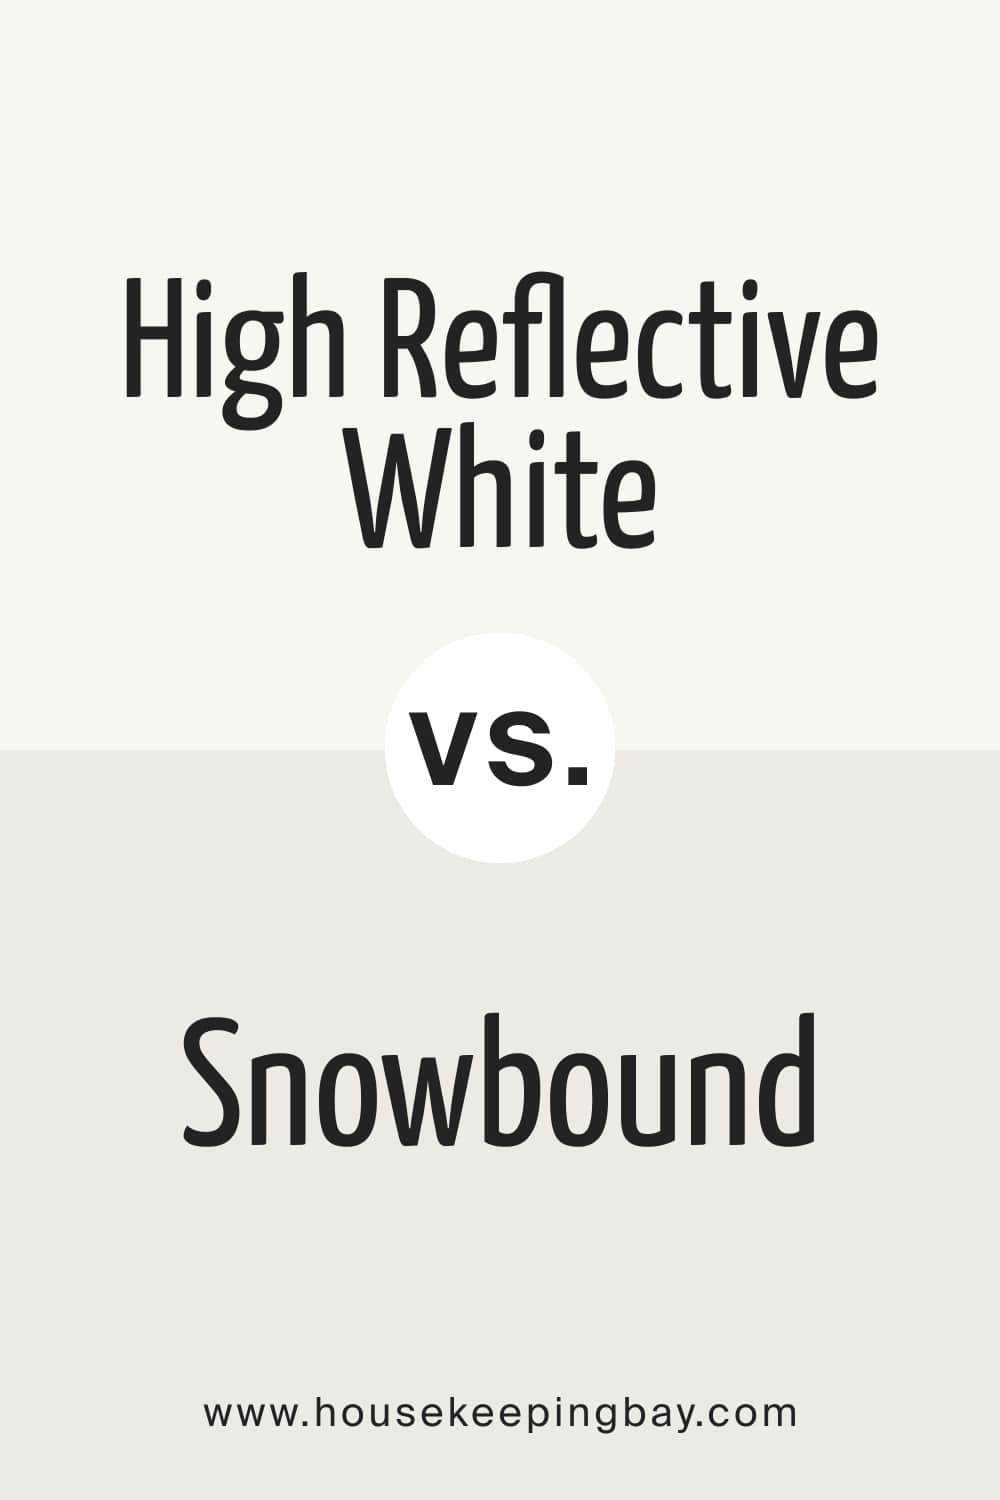 High Reflective White vs. Snowbound